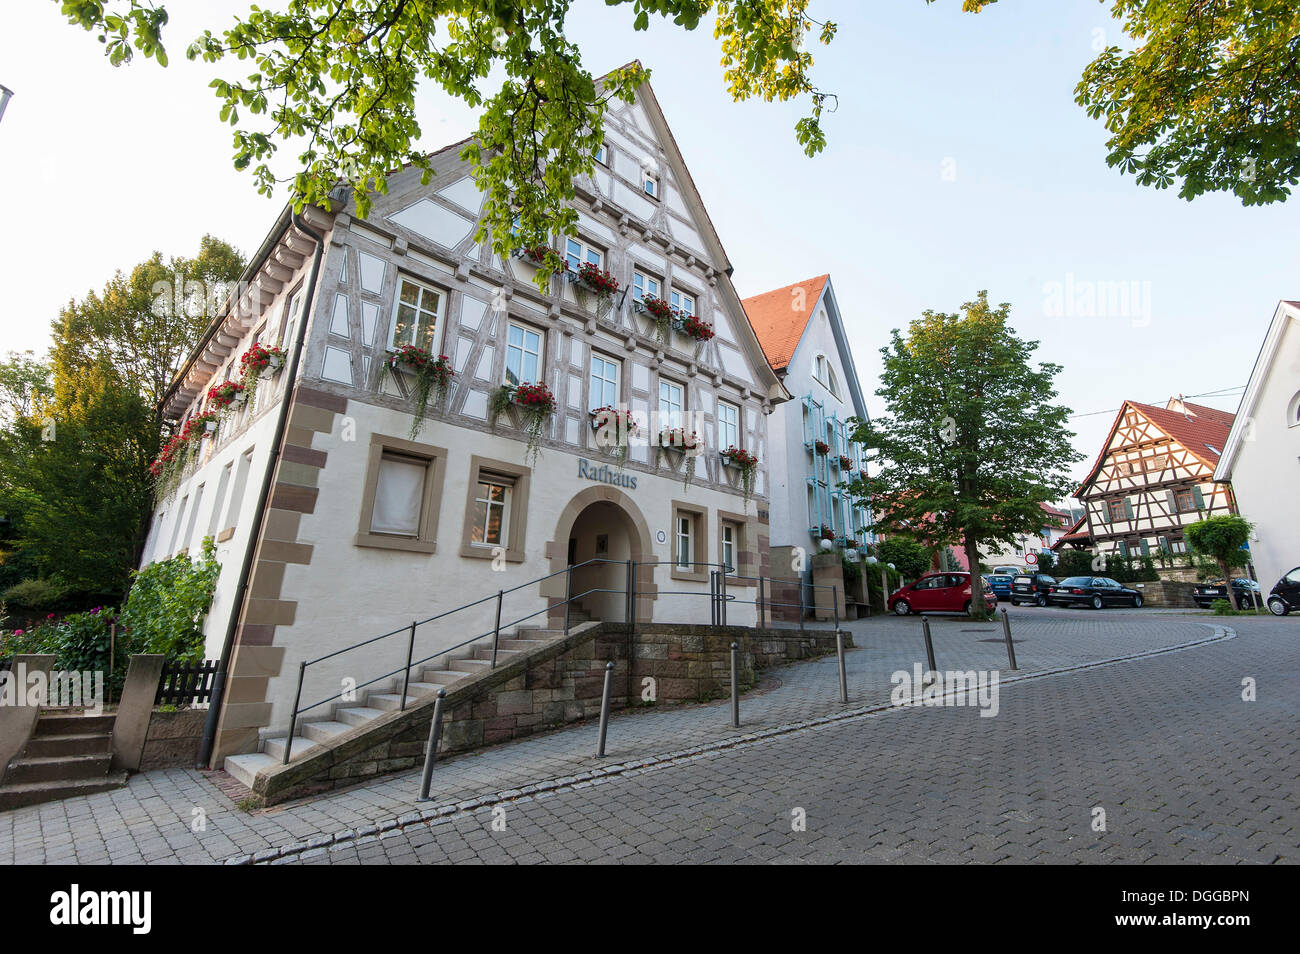 Rathaus, Korb, Baden-Württemberg Stockfotografie - Alamy